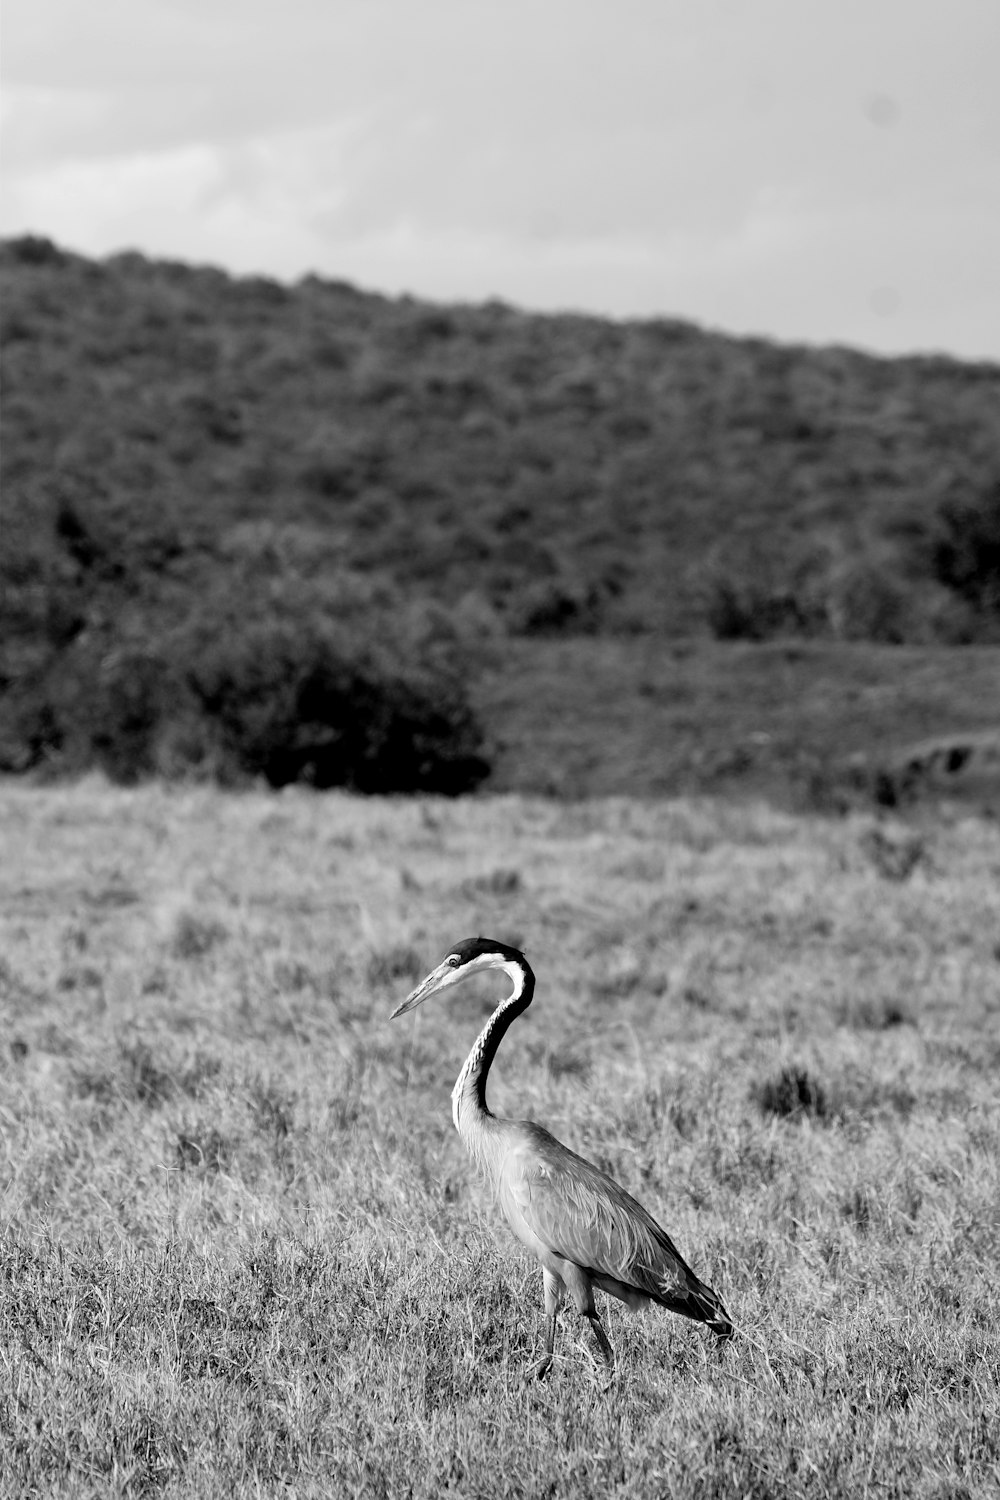 gray long legged bird on grass field